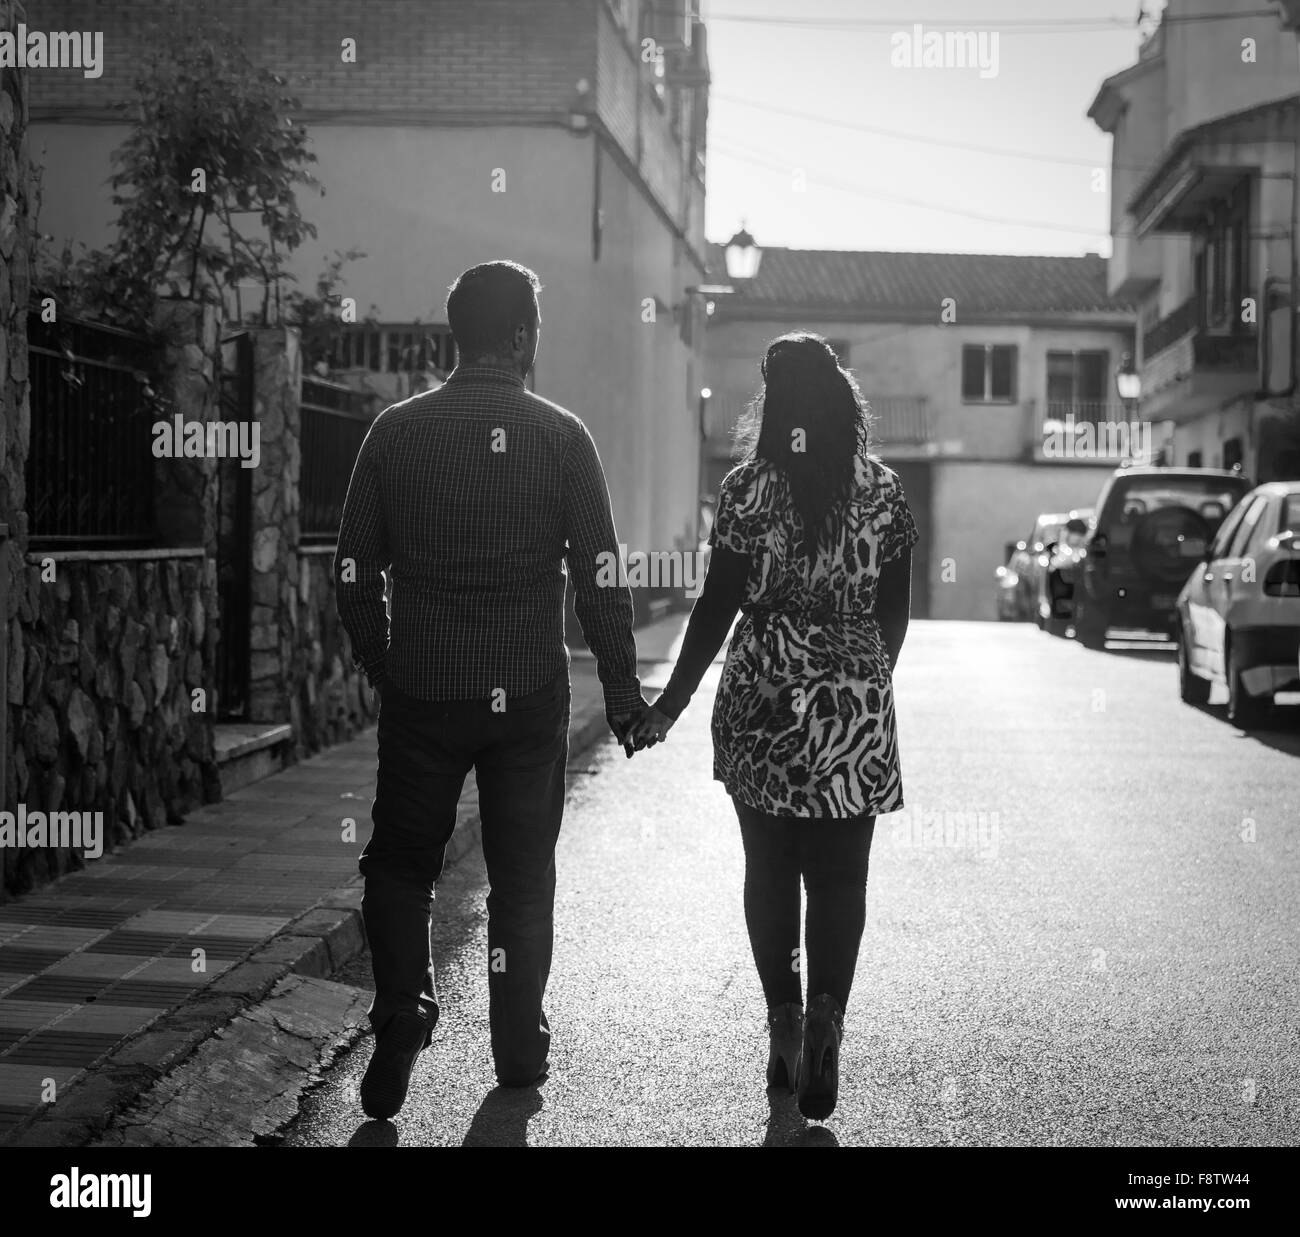 Zwei junge liebenden halten Hände auf der Straße mit dem Rücken zur Kamera. Schwarz / weiß-Behandlung beiträgt zur Atmosphäre. Stockfoto